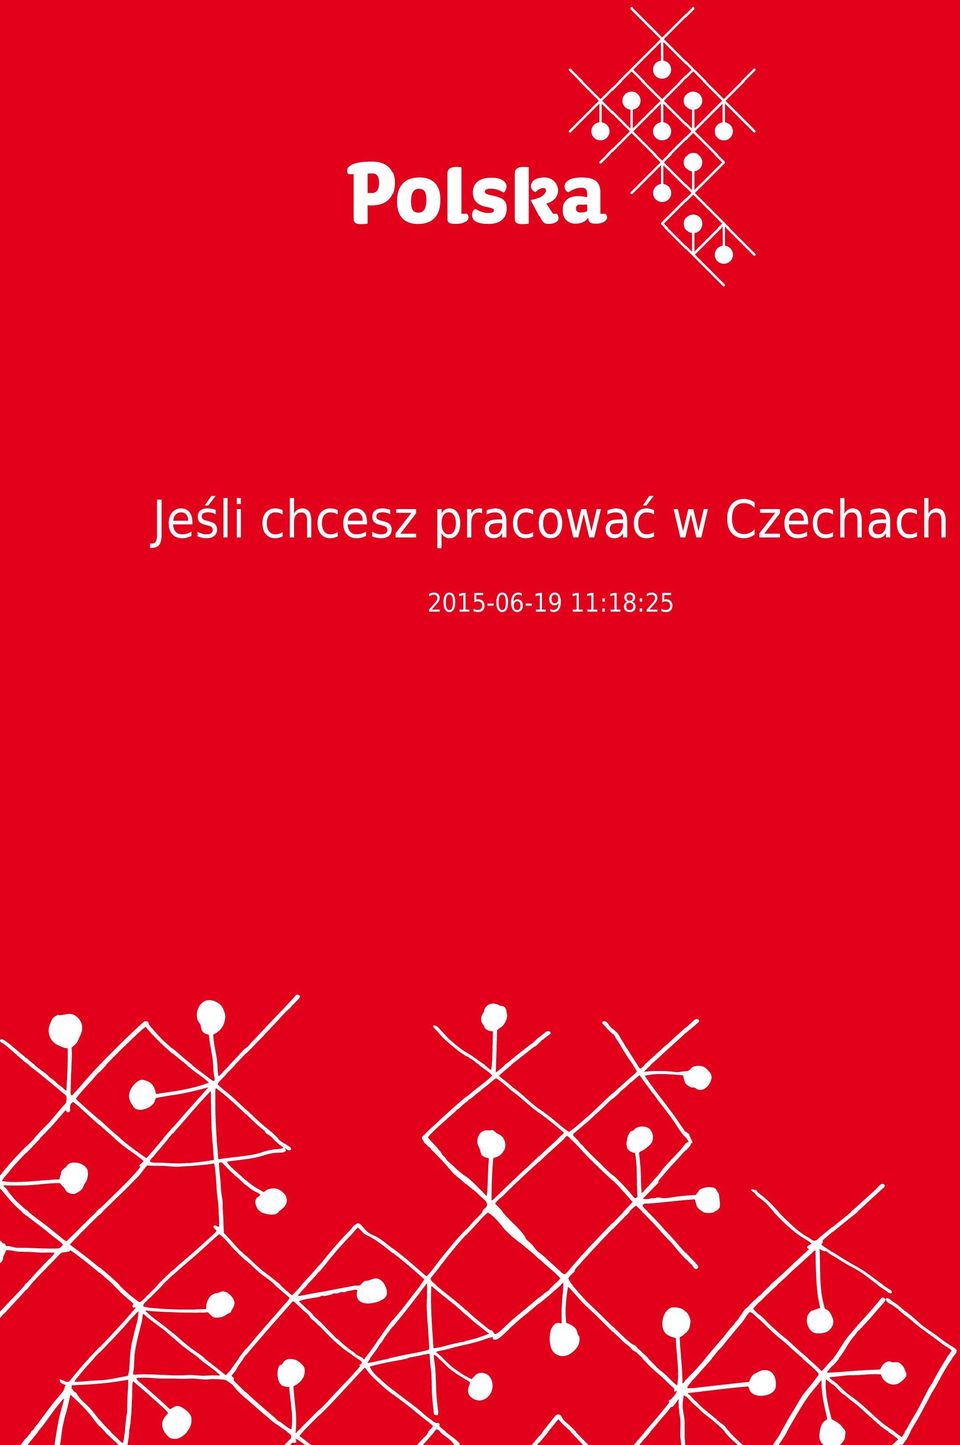 Czechach